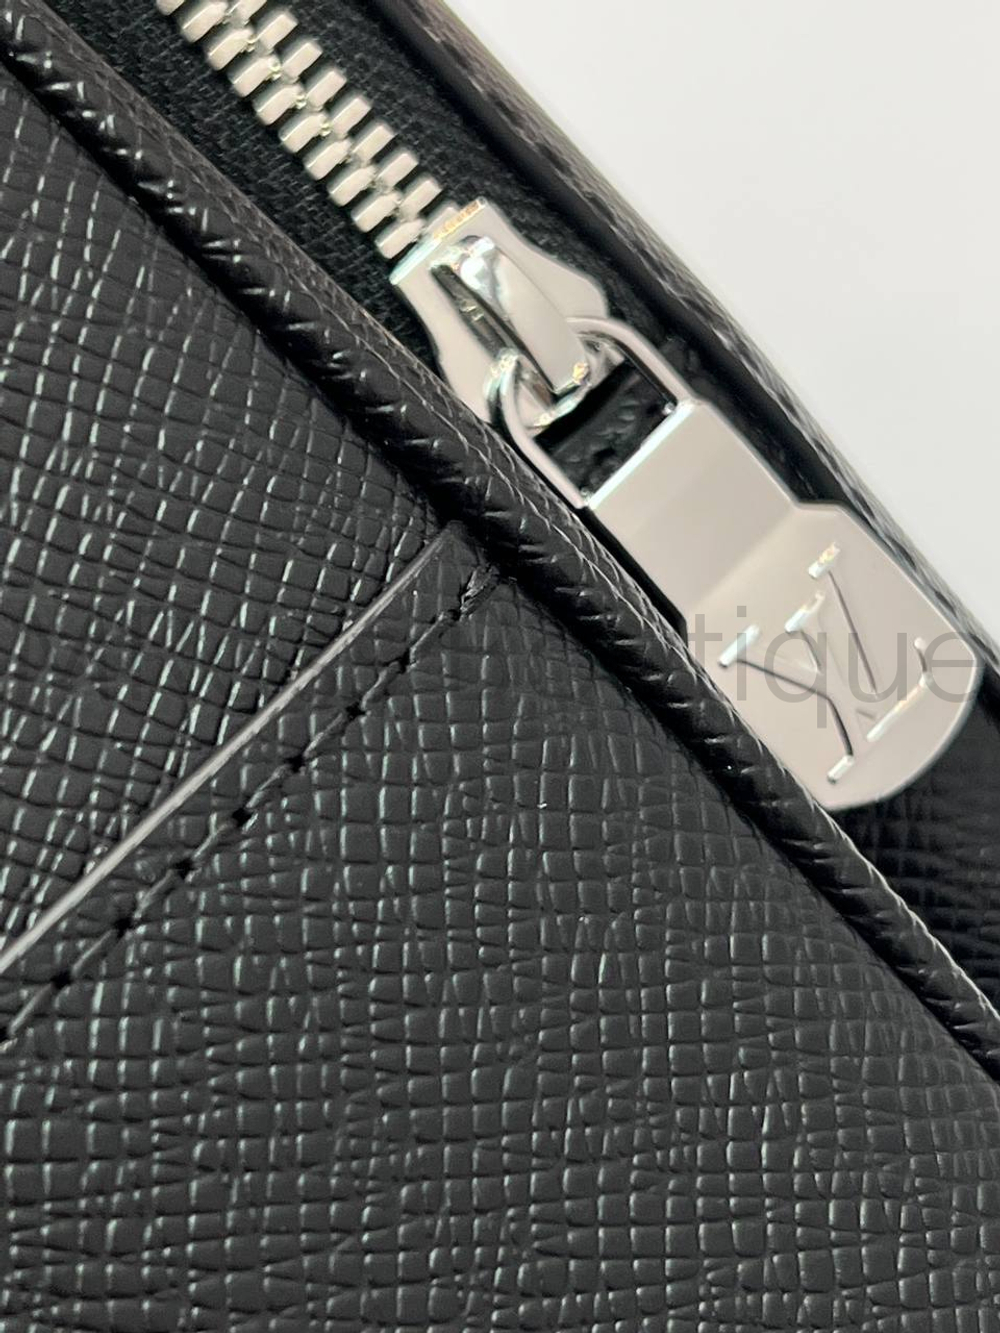 Рюкзак Louis Vuitton Adrian премиум класса